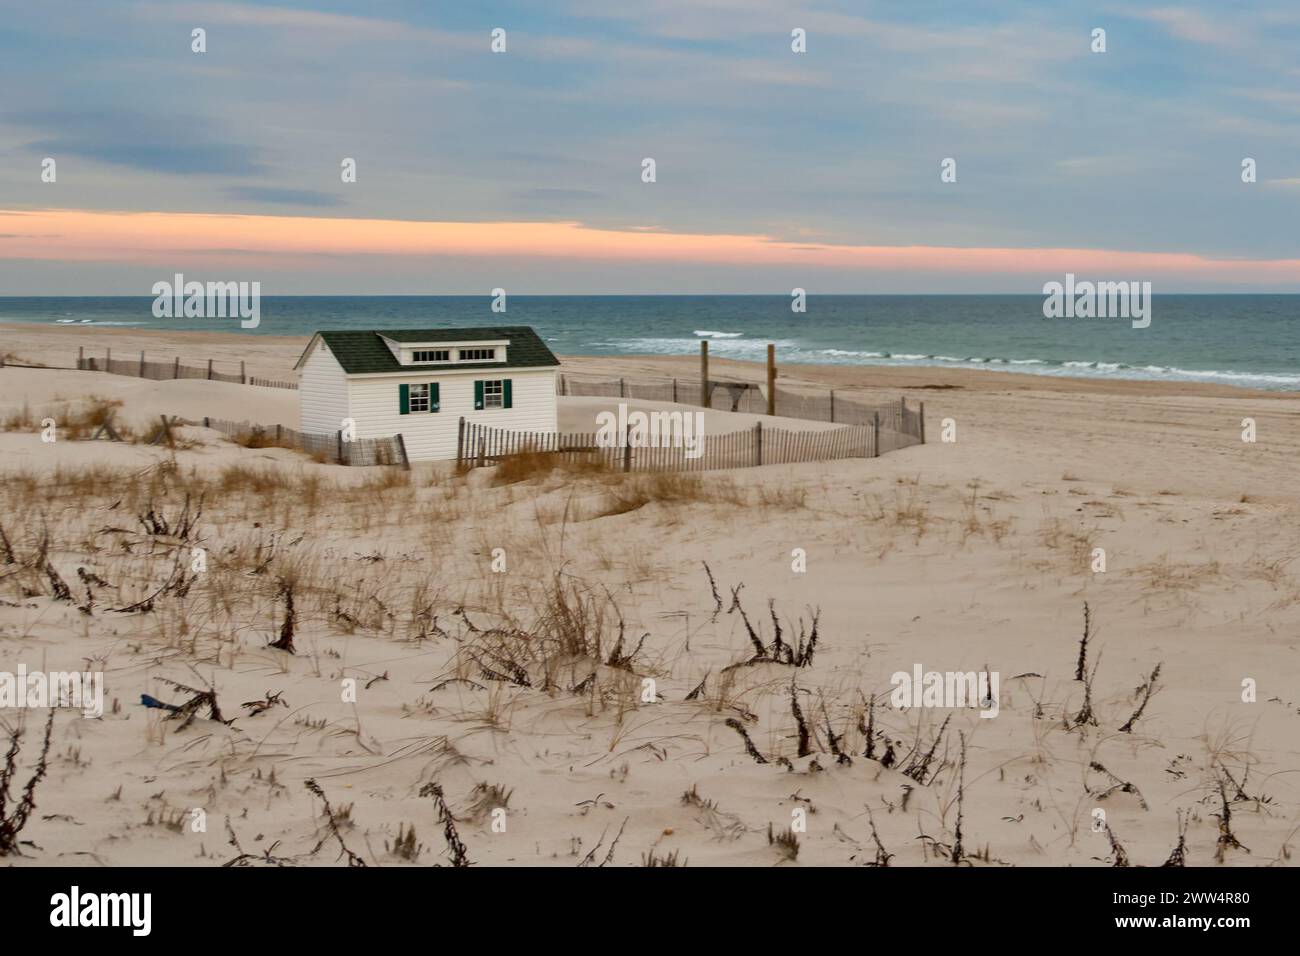 Eine einsame Hütte sticht an einem ruhigen Strand hervor Stockfoto